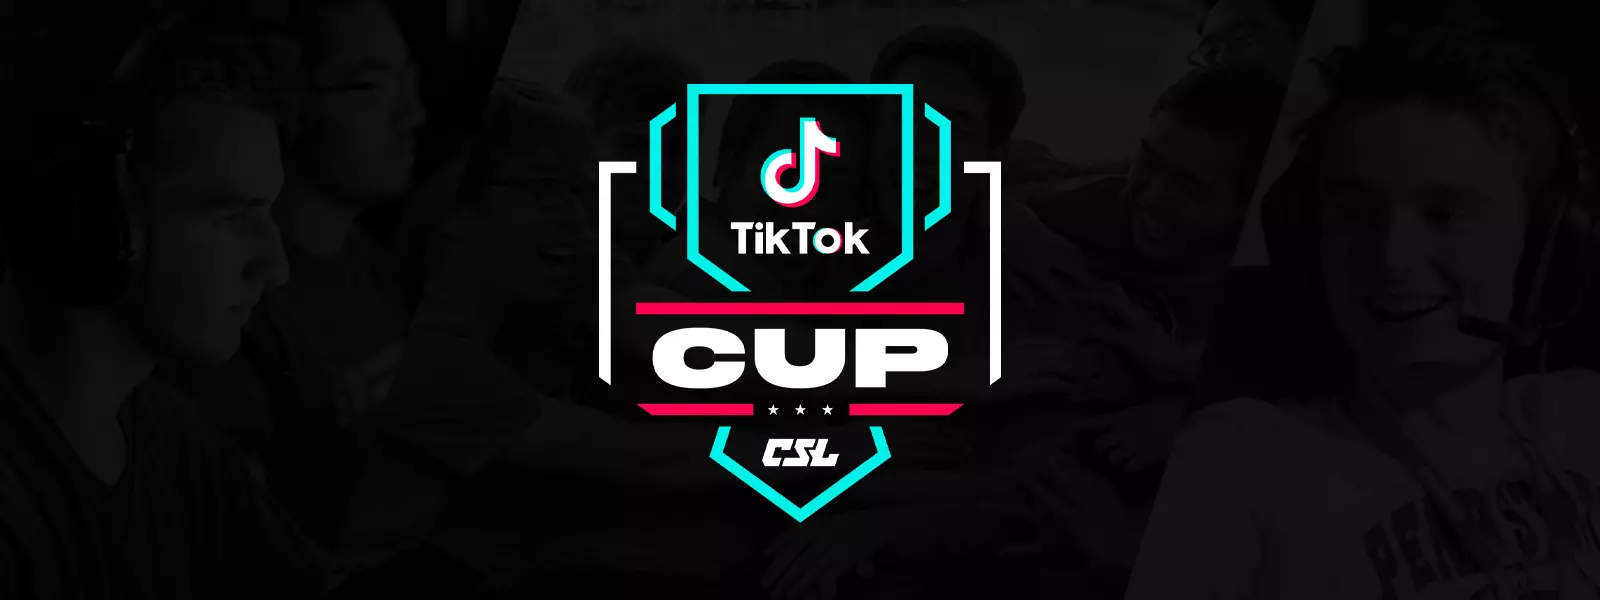 TikTok Esports Cup